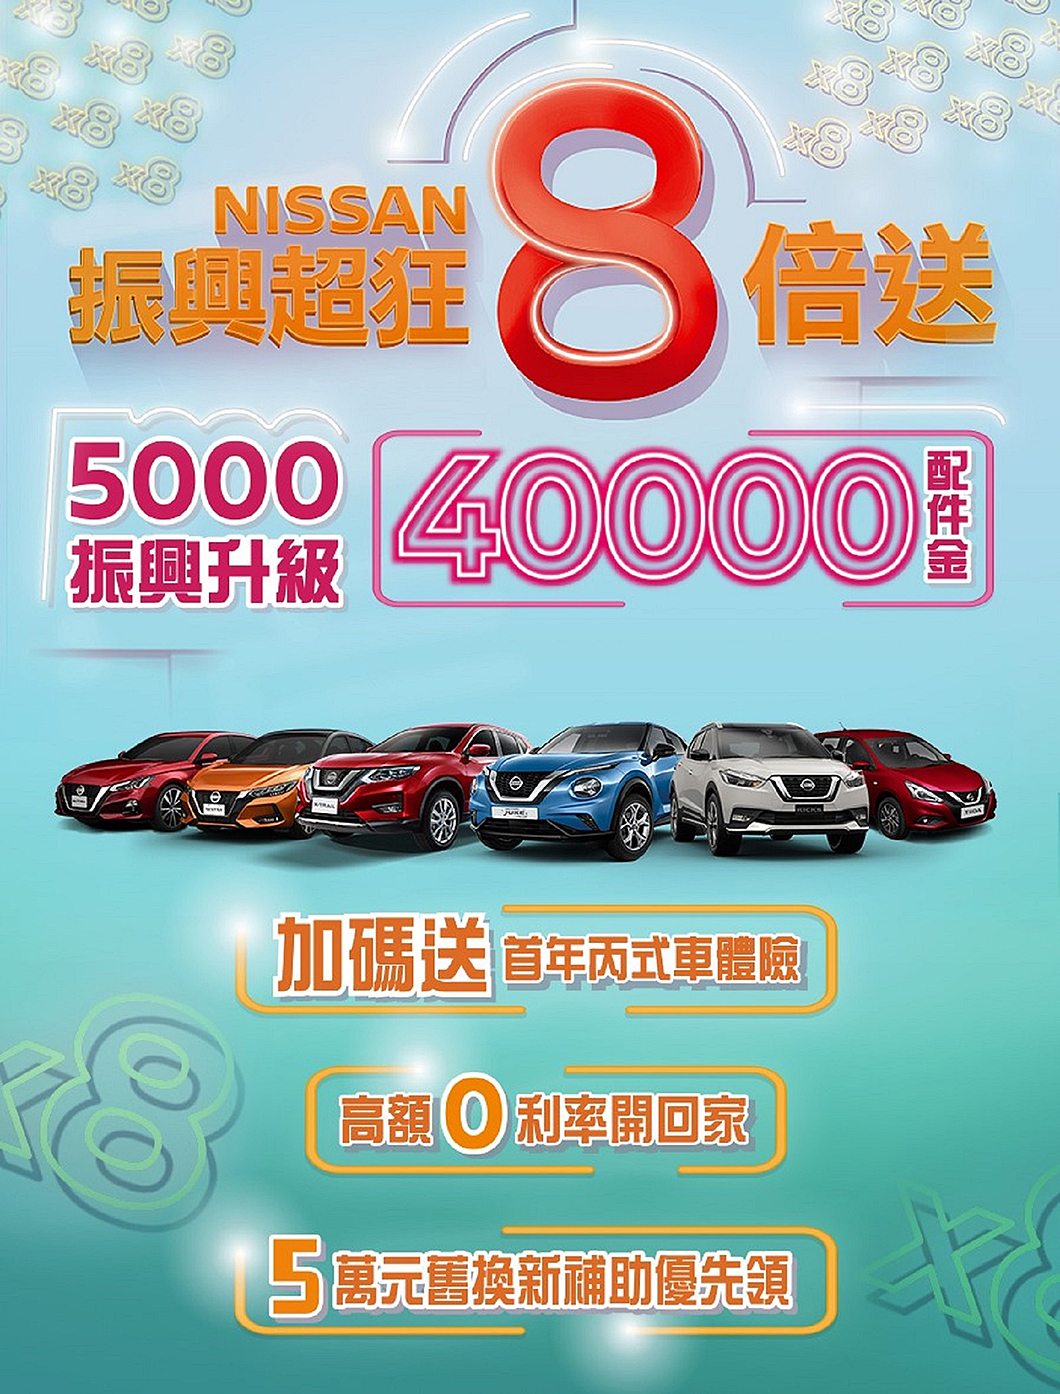 Nissan五倍券優惠主要著重於配件金加碼。(圖片來源/ 裕隆日產)